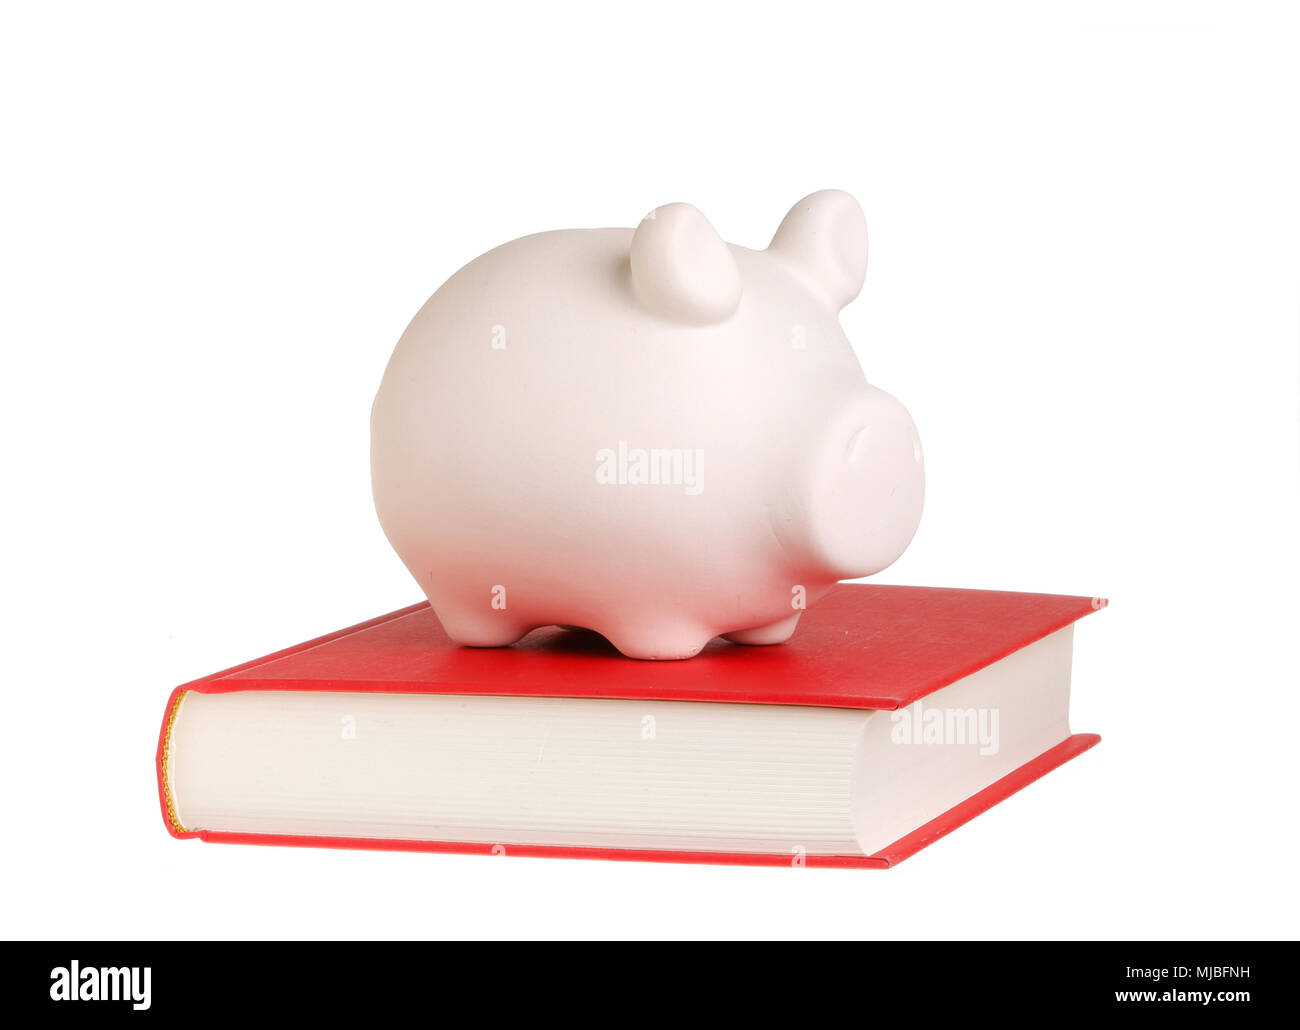 Ein sparschwein stehend auf ein geschlossenes Buch mit rotem Deckel symbolisiert, dass Wissen belohnt wird, auf weißem Hintergrund. Stockfoto